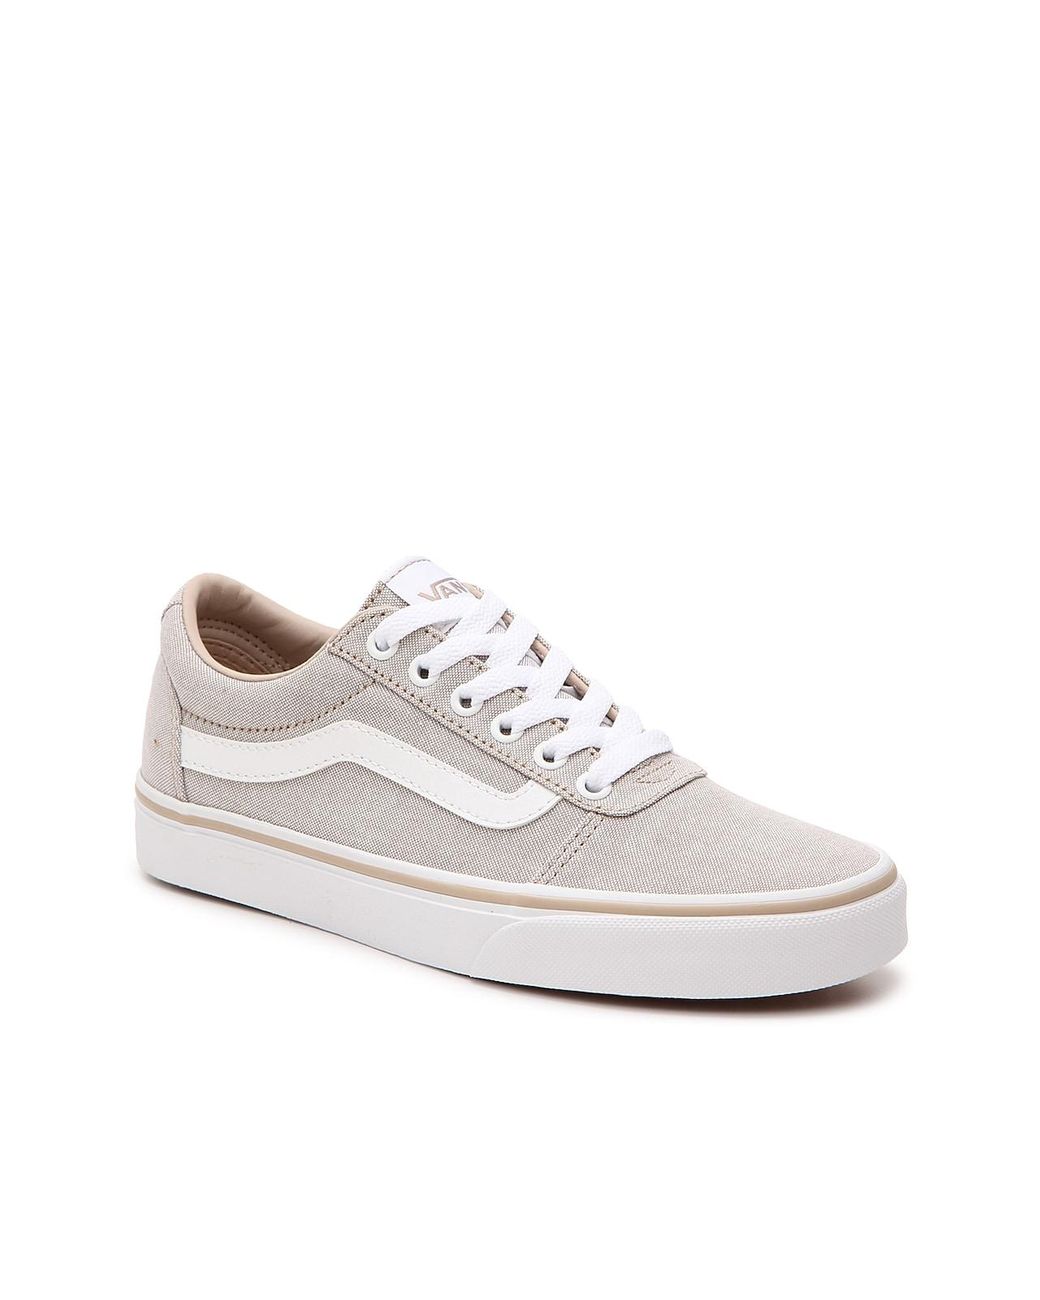 Vans Ward Lo Sneaker in White | Lyst